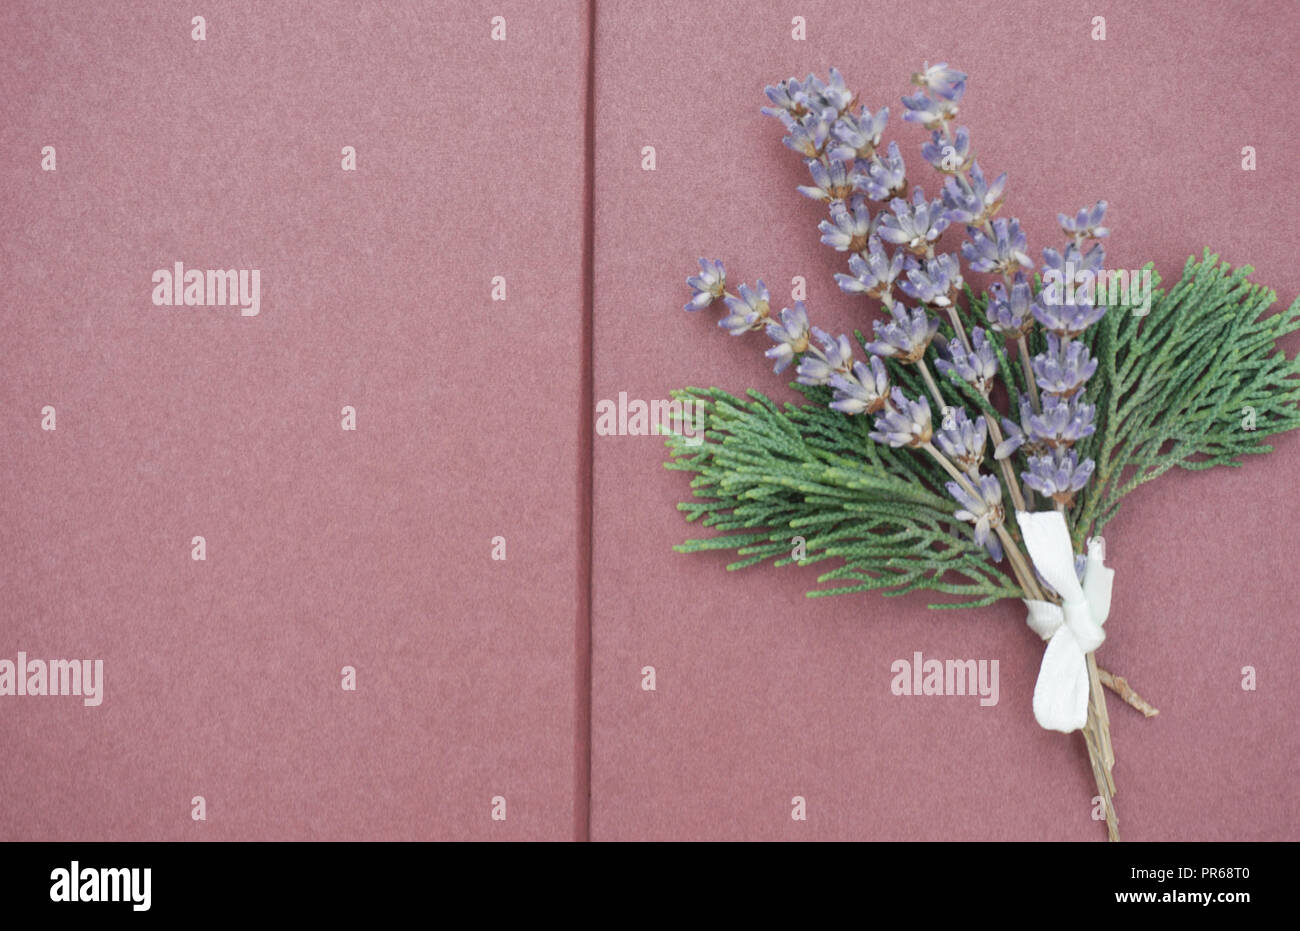 Ouvrir les pages vierges de scrapbook avec bouquet de lavande lilas et branches vertes sur le côté droit. Copie gratuite de l'espace pour texte Banque D'Images